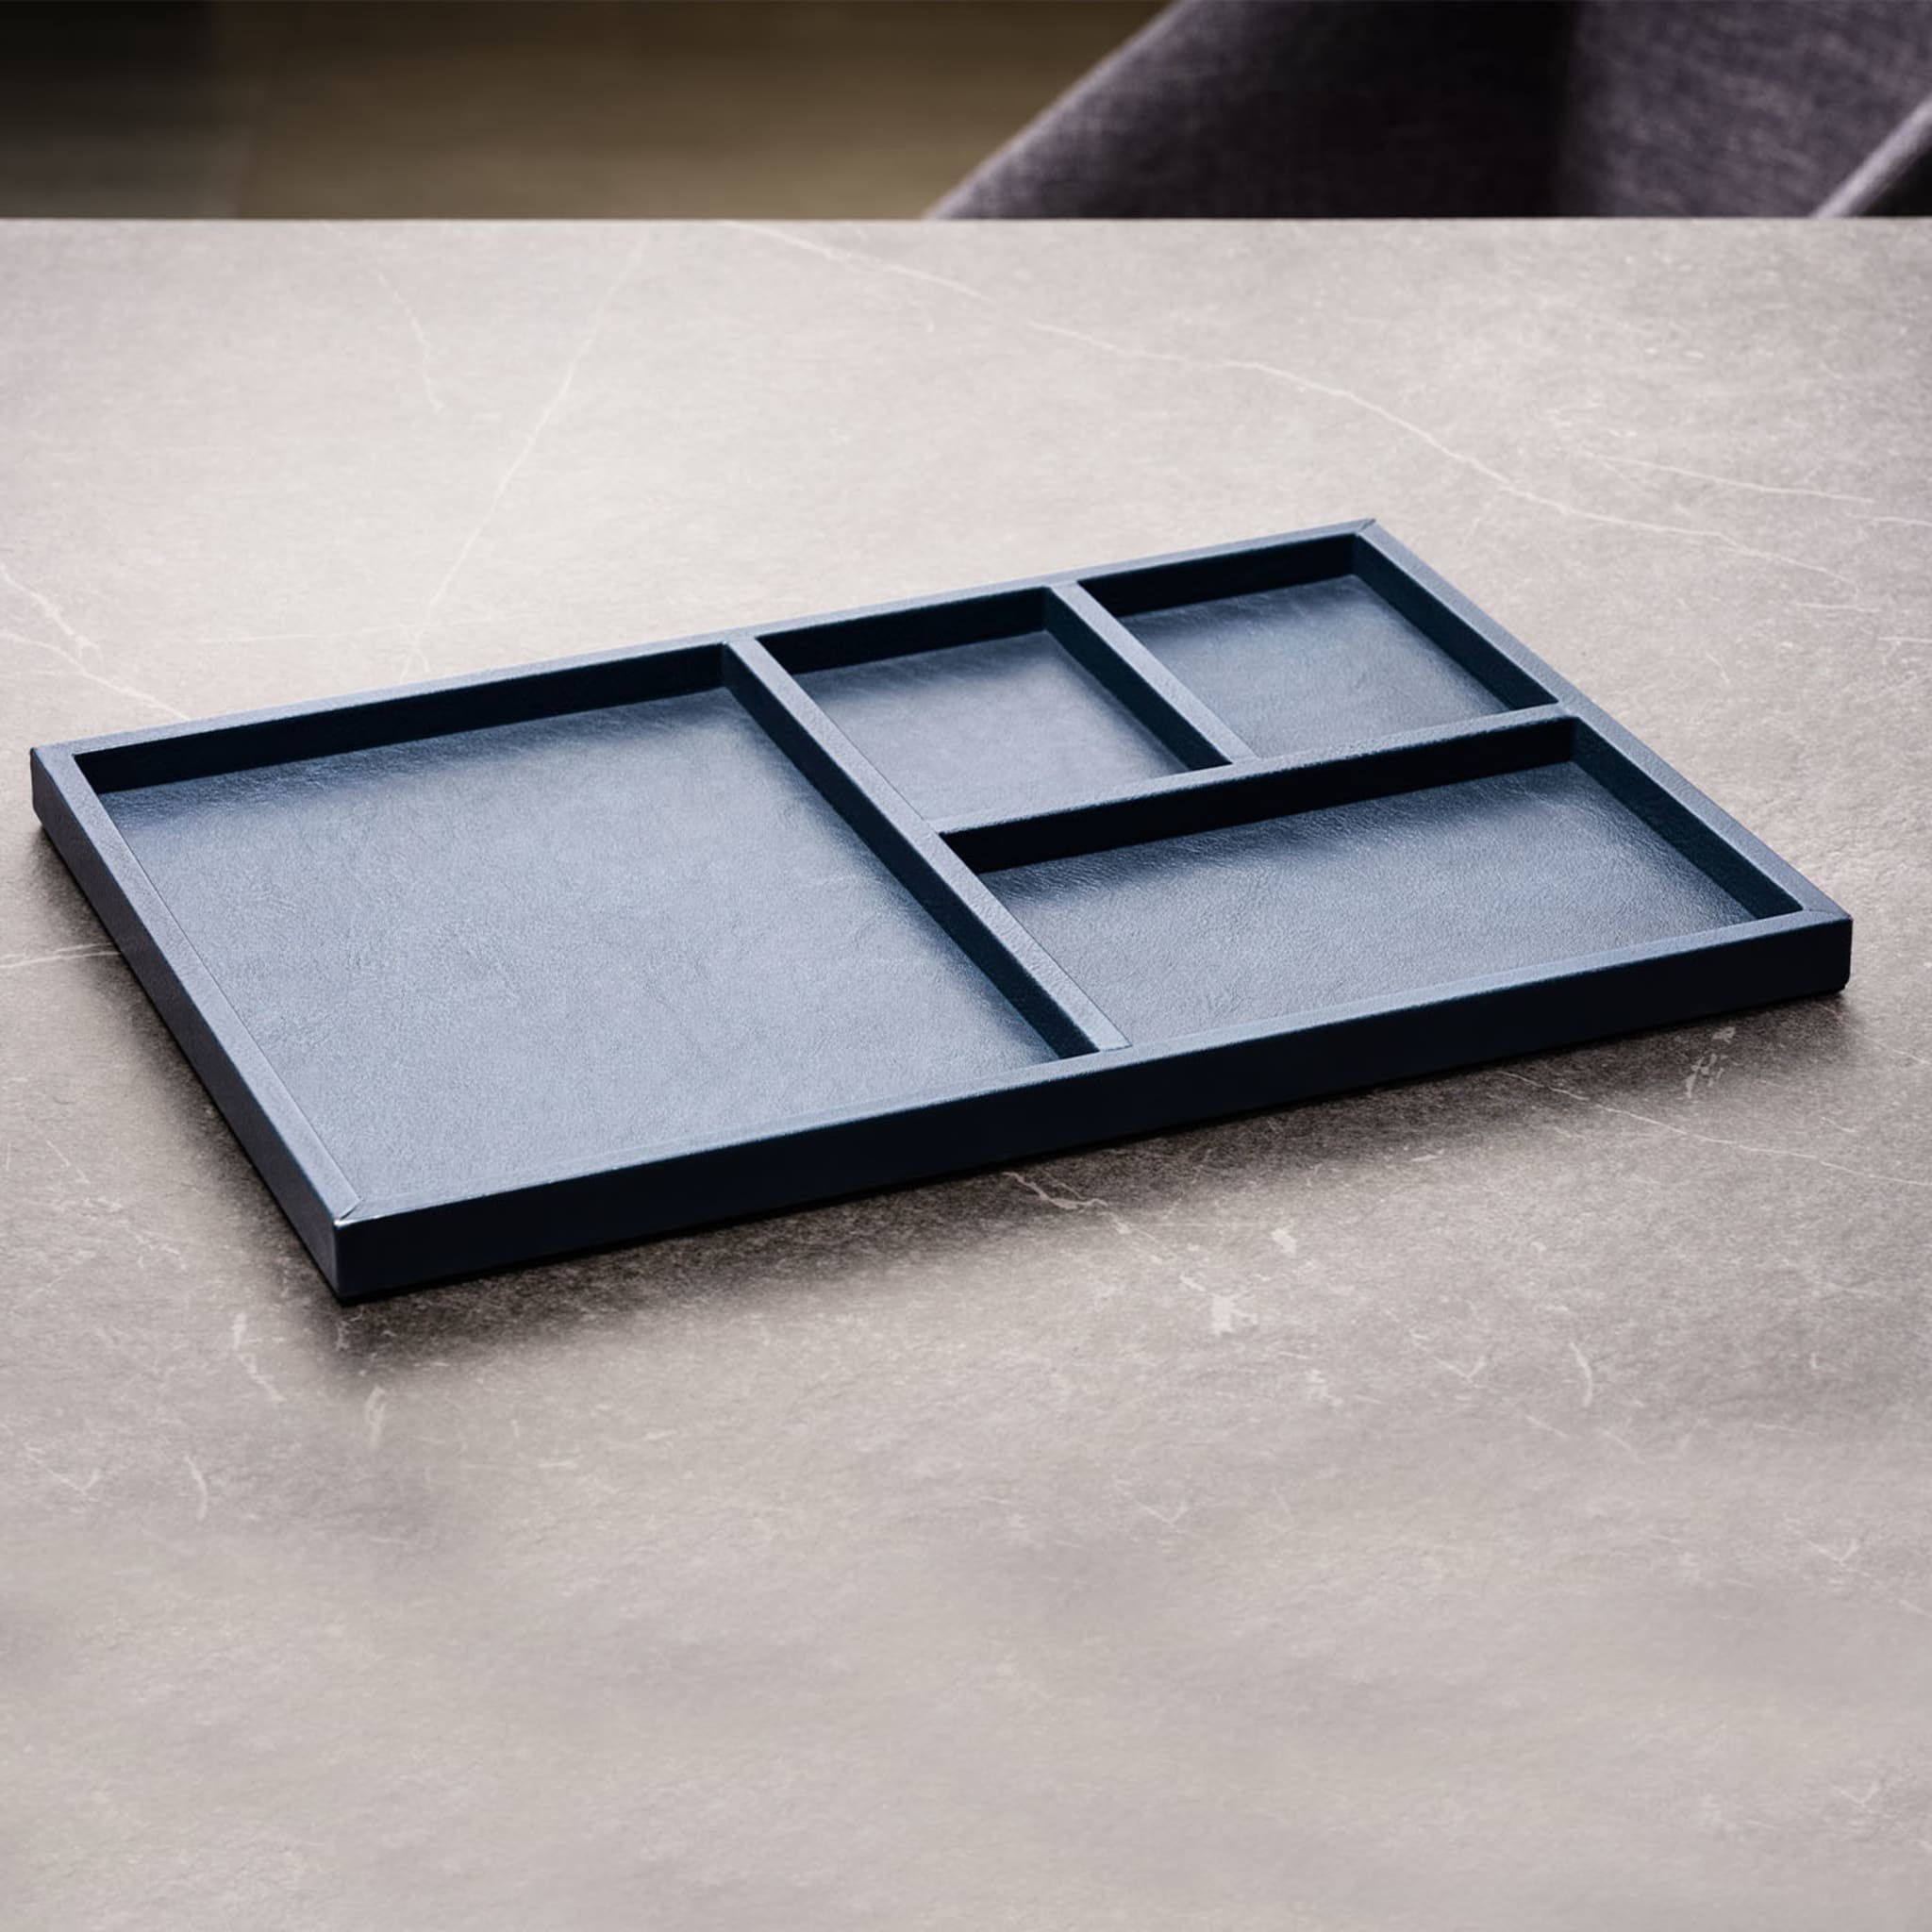 Blaues Leder-Kantinen-Tablett 01 von Shawn Henderson - Alternative Ansicht 2